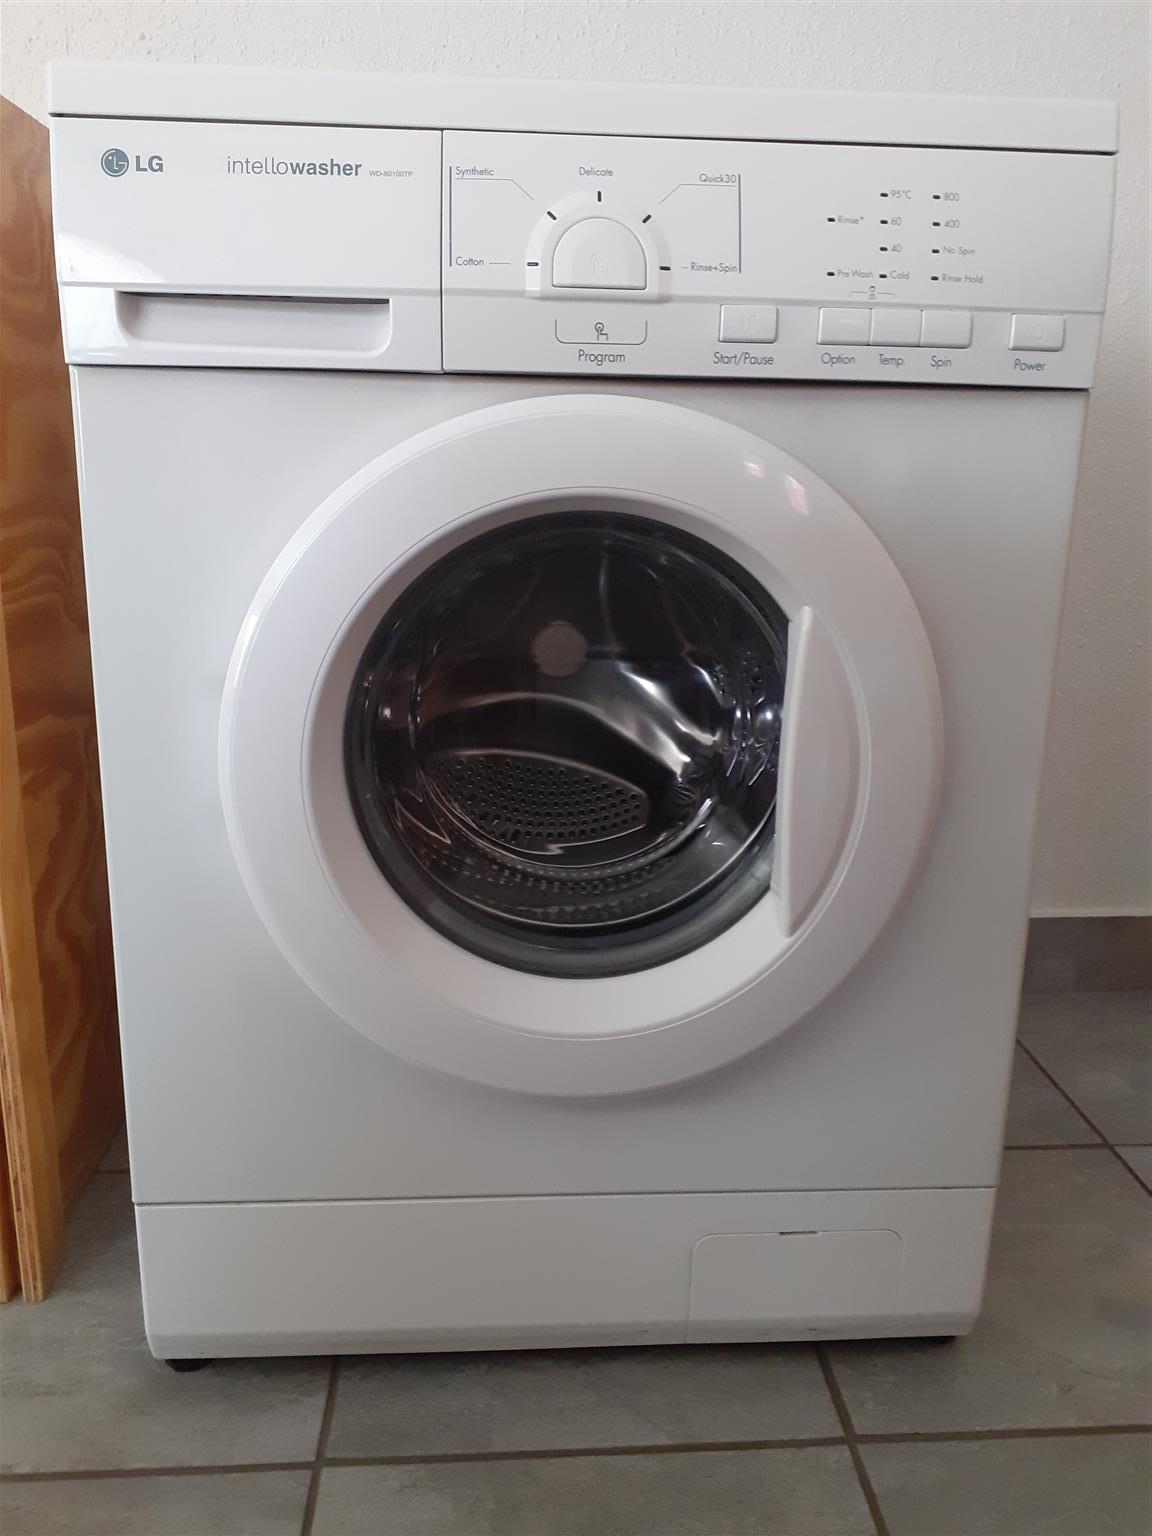 Washing Machine LG Intellowasher